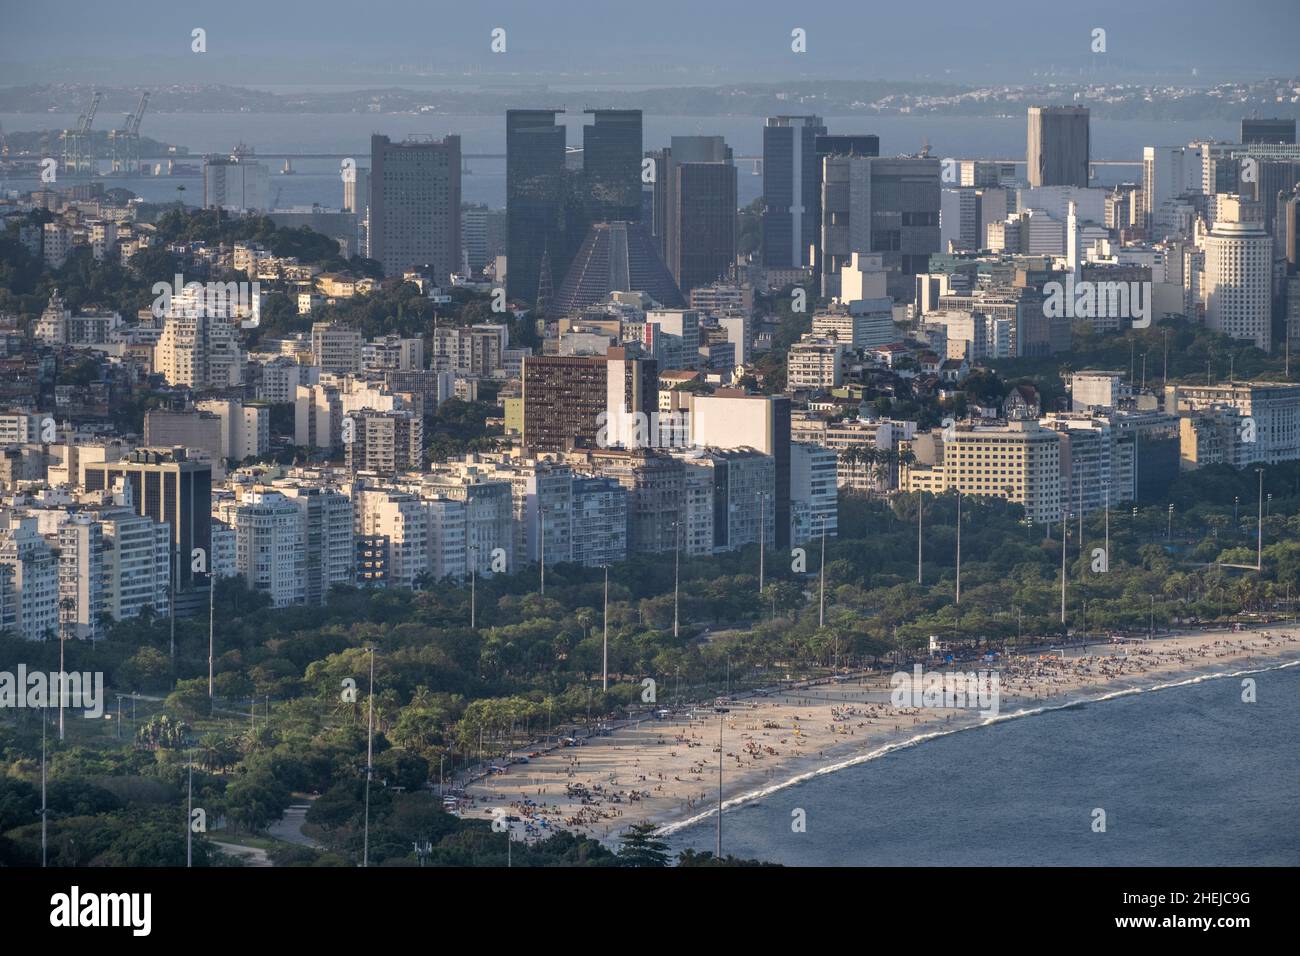 Brasilien, Rio de Janeiro. Das zentrale Geschäftsviertel in der Innenstadt mit den öffentlichen Gärten des Atro do Flamengo von Roberto Burle Marx und dem Flamengo-Strand Stockfoto